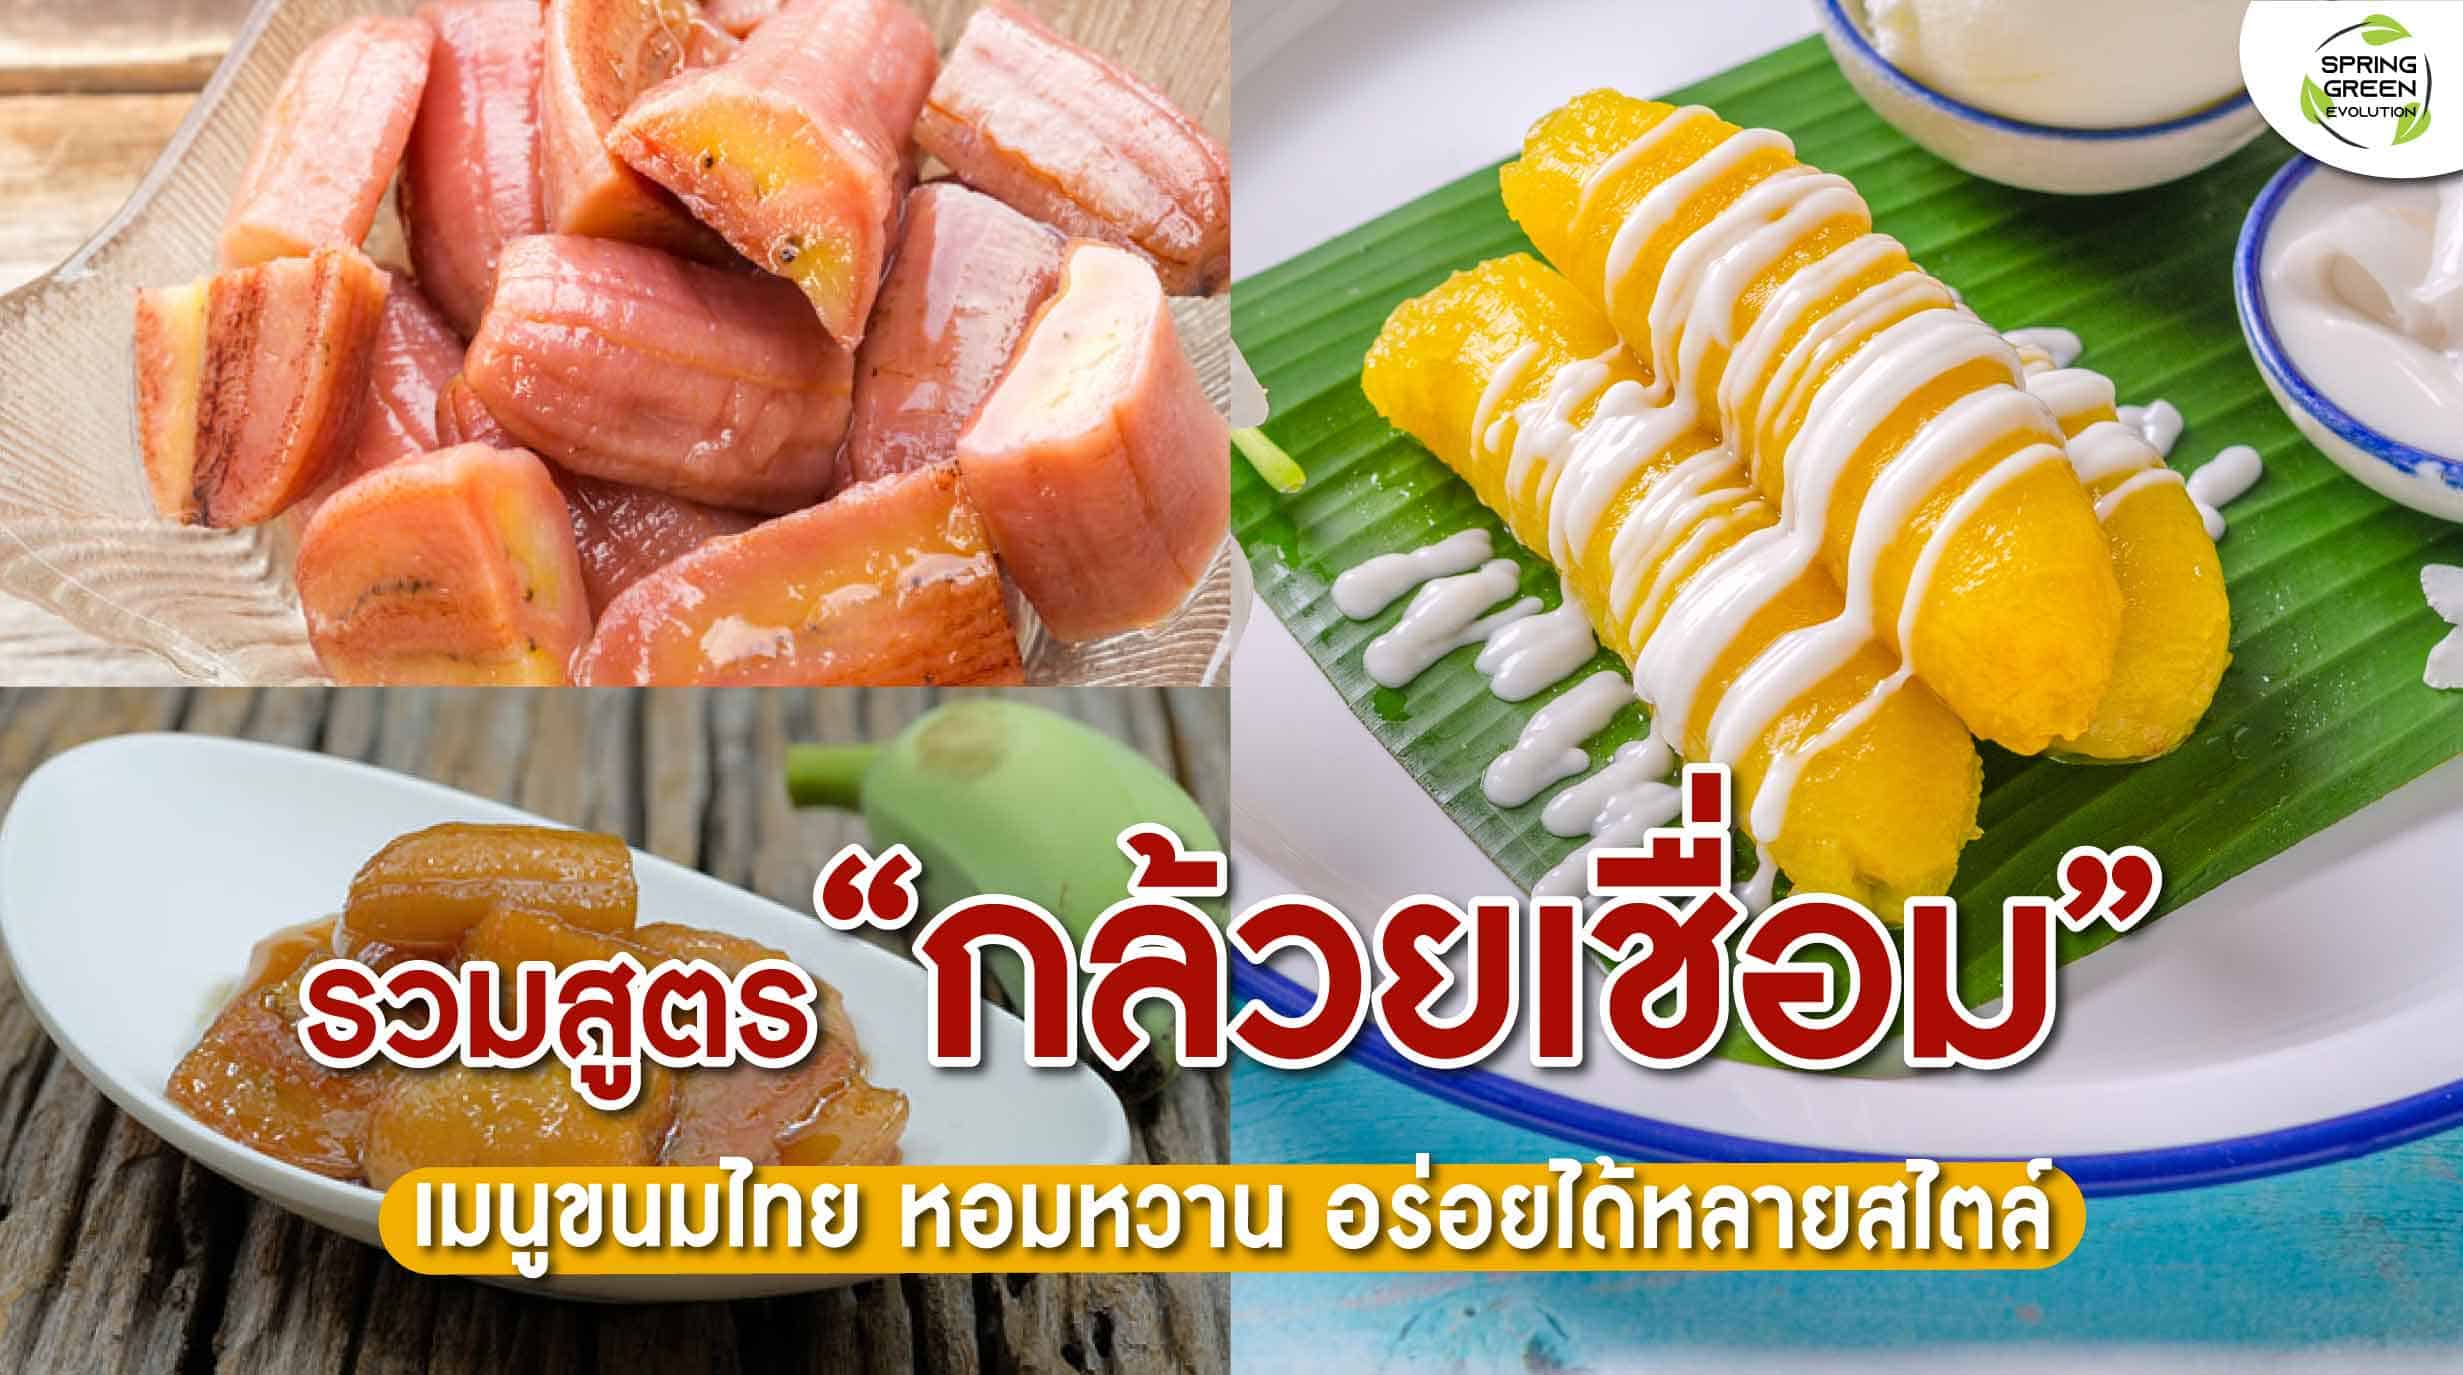 220210-Content-รวมสูตร-กล้วยเชื่อม-เมนูขนมไทย-ทำง่ายไม่กี่ขั้นตอน01